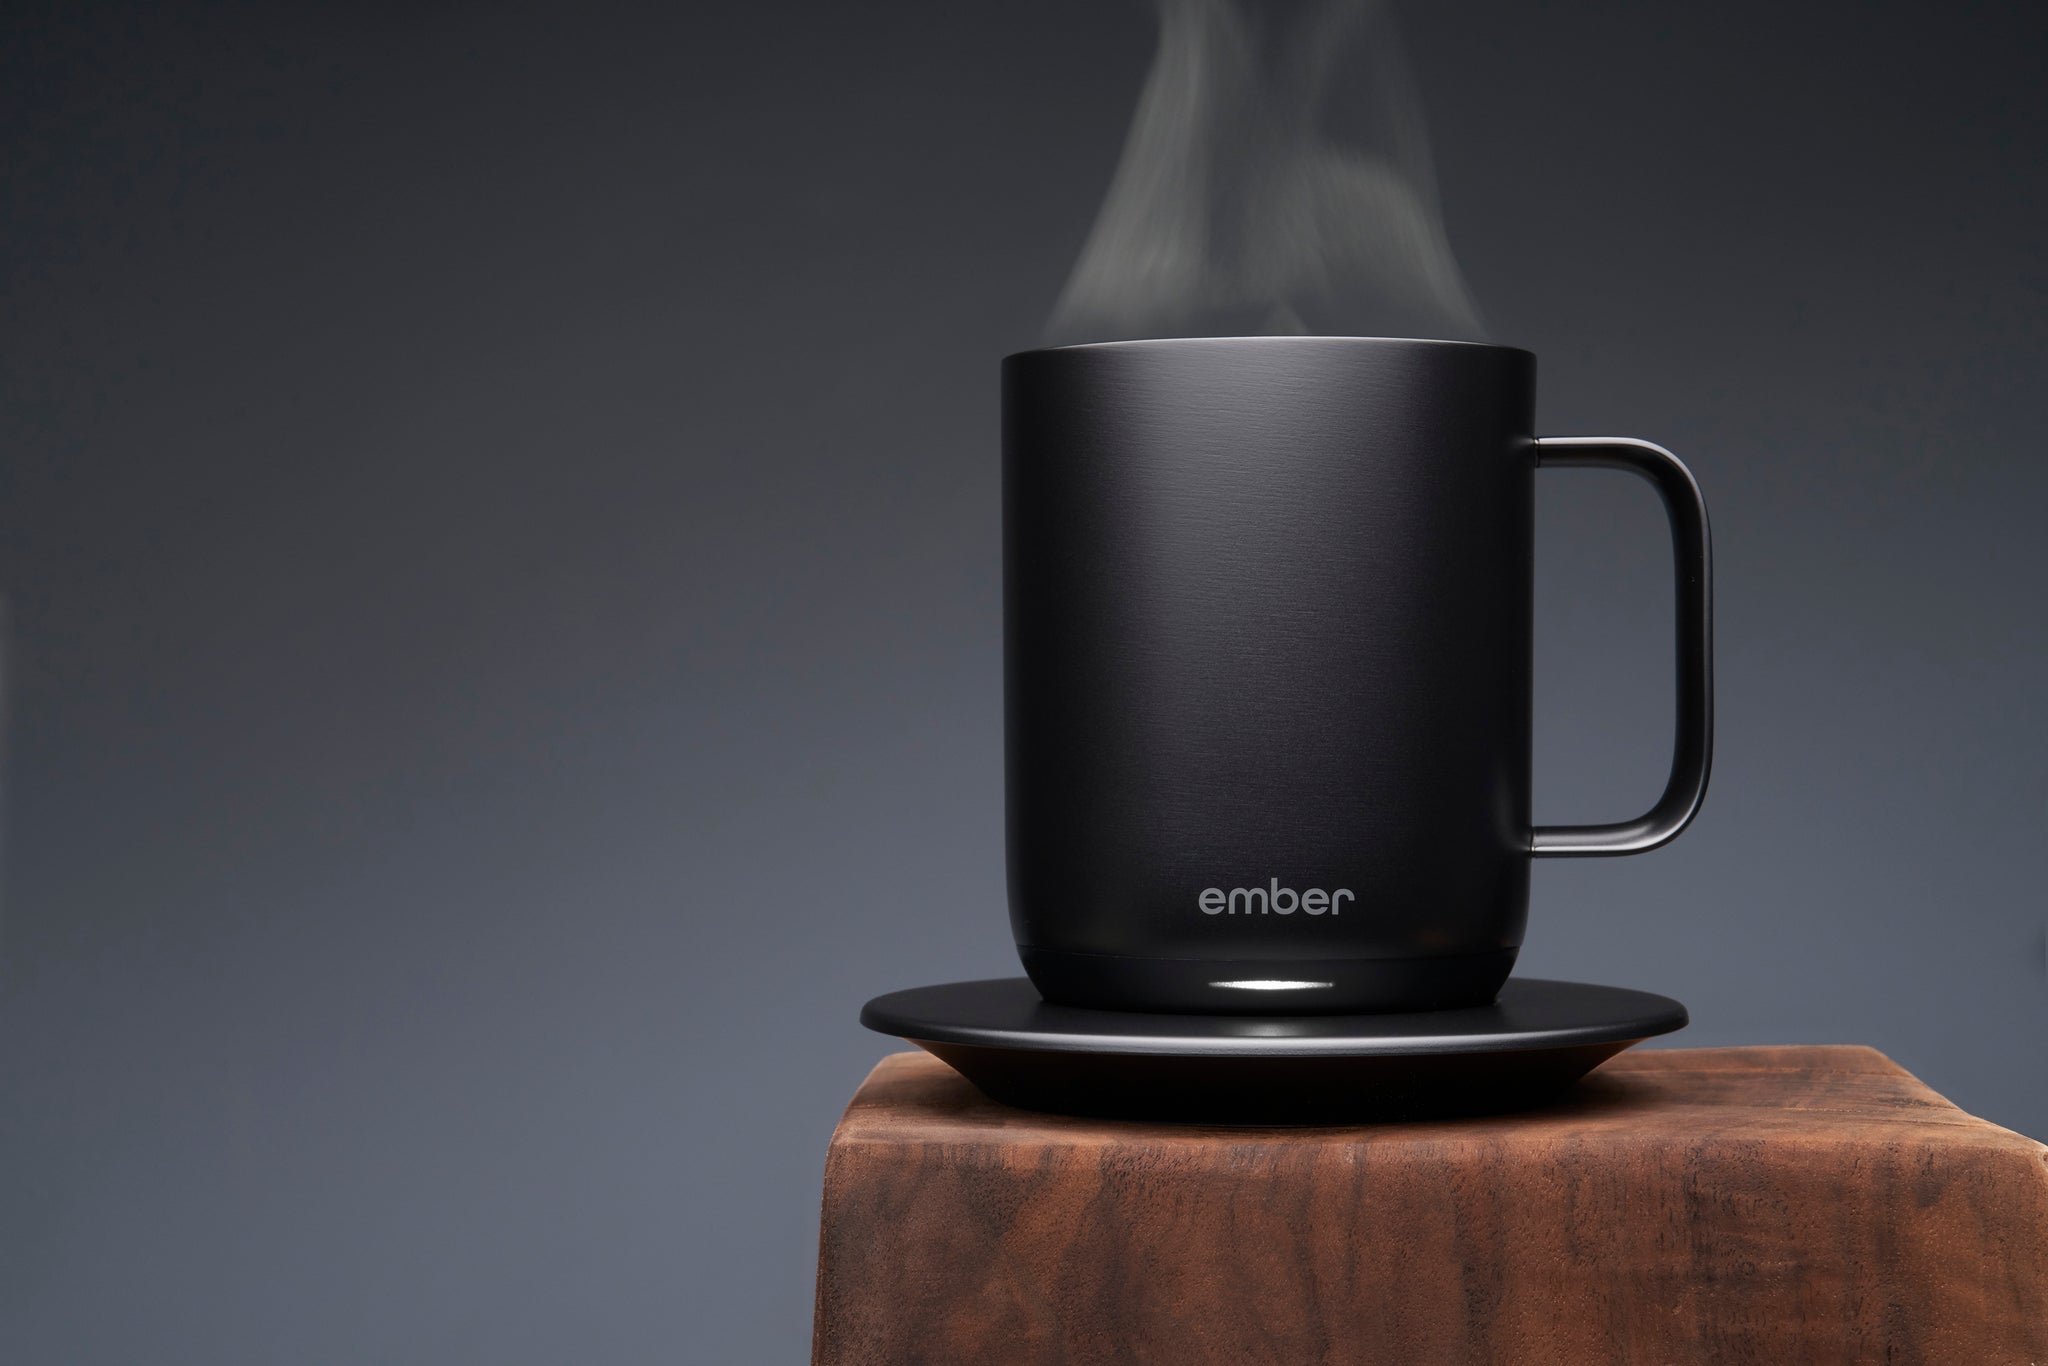 Ember Mug 2, 10 oz, Temperature Control Smart Mug, Black 